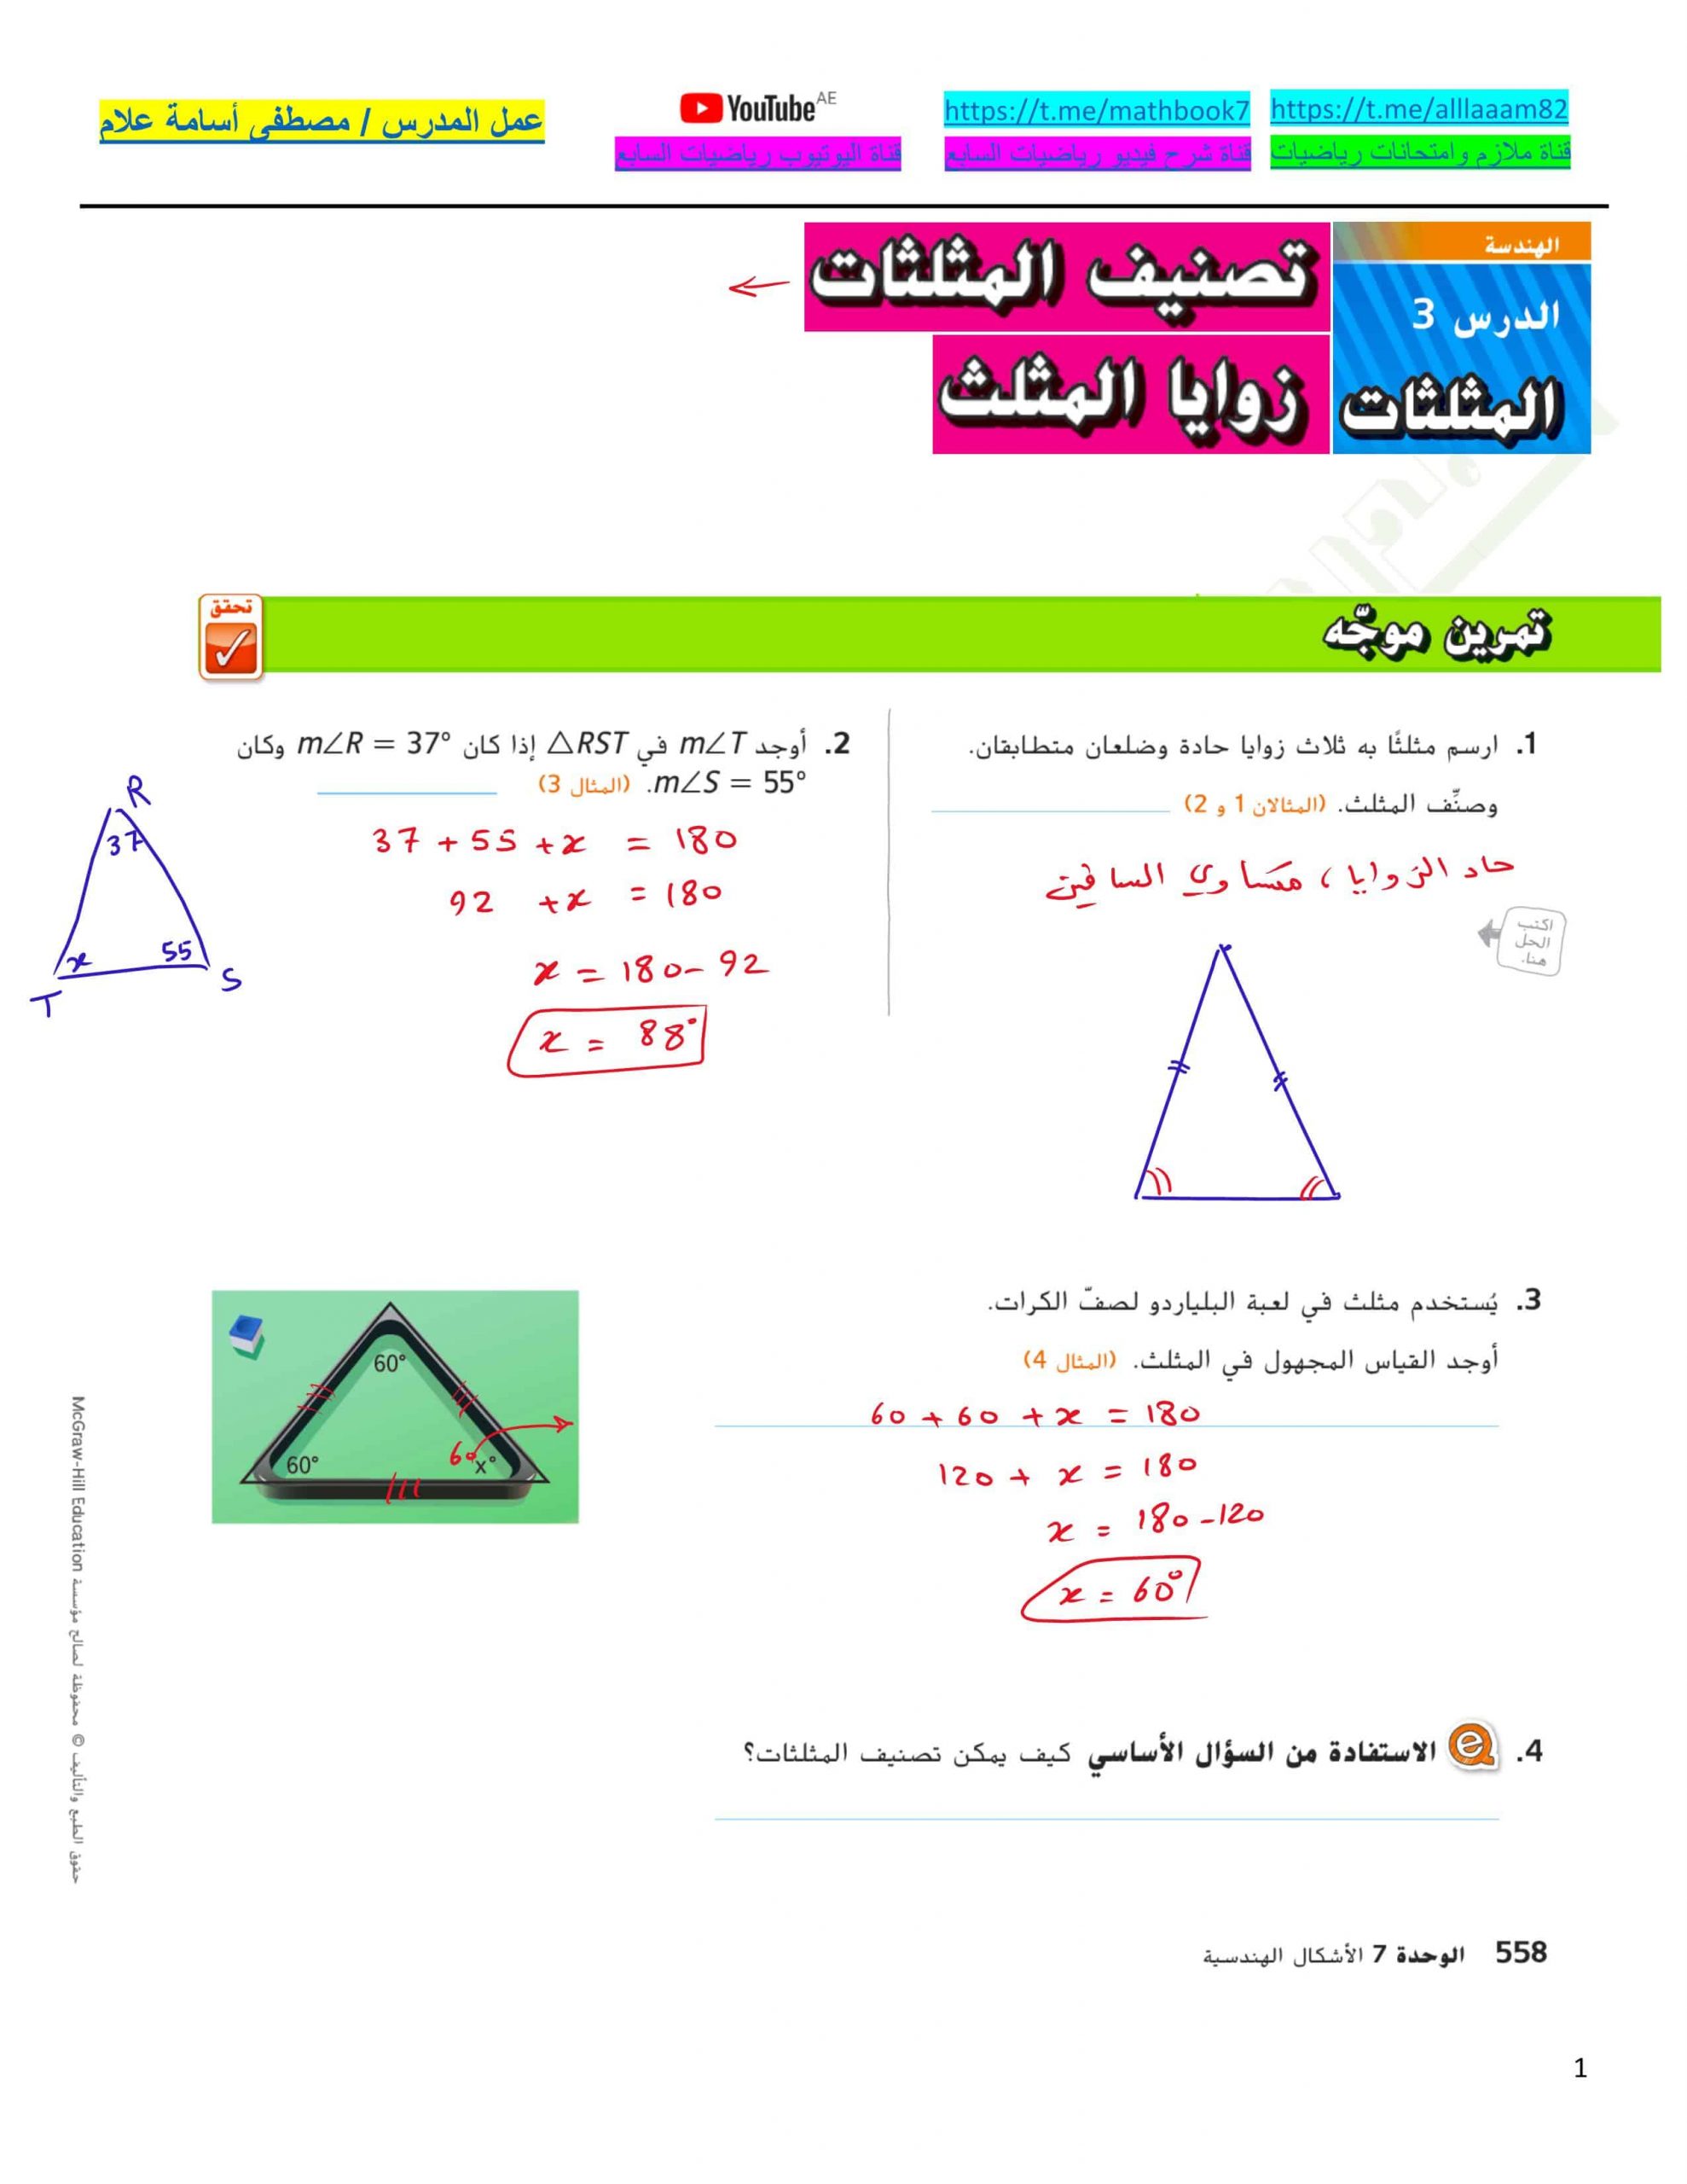 حل درس تصنيف المثلثات زوايا المثلثات الصف السابع مادة الرياضيات المتكاملة 